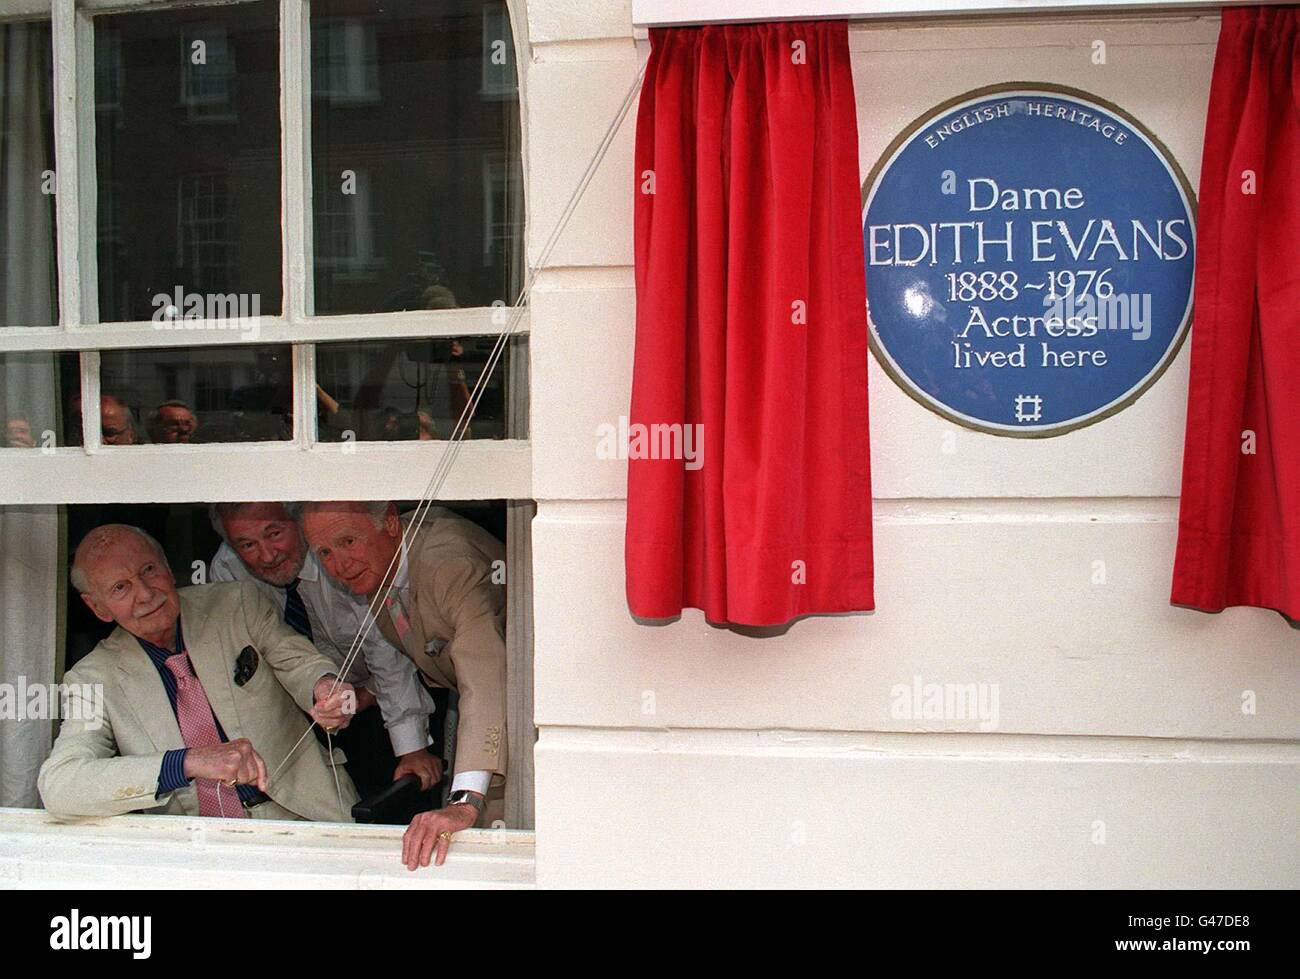 Il sipario è innalzato su una targa blu English Heritage che celebra la vita di Dame Edith Evans oggi (Mercoledì) nella sua casa d'infanzia a 109 Ebury Street, West London. Alzando il sipario dalla finestra (l/r) Sir John Giegud; Bryan Forbes e Sir John Mills. Foto di Neil Munns/PA. Foto Stock